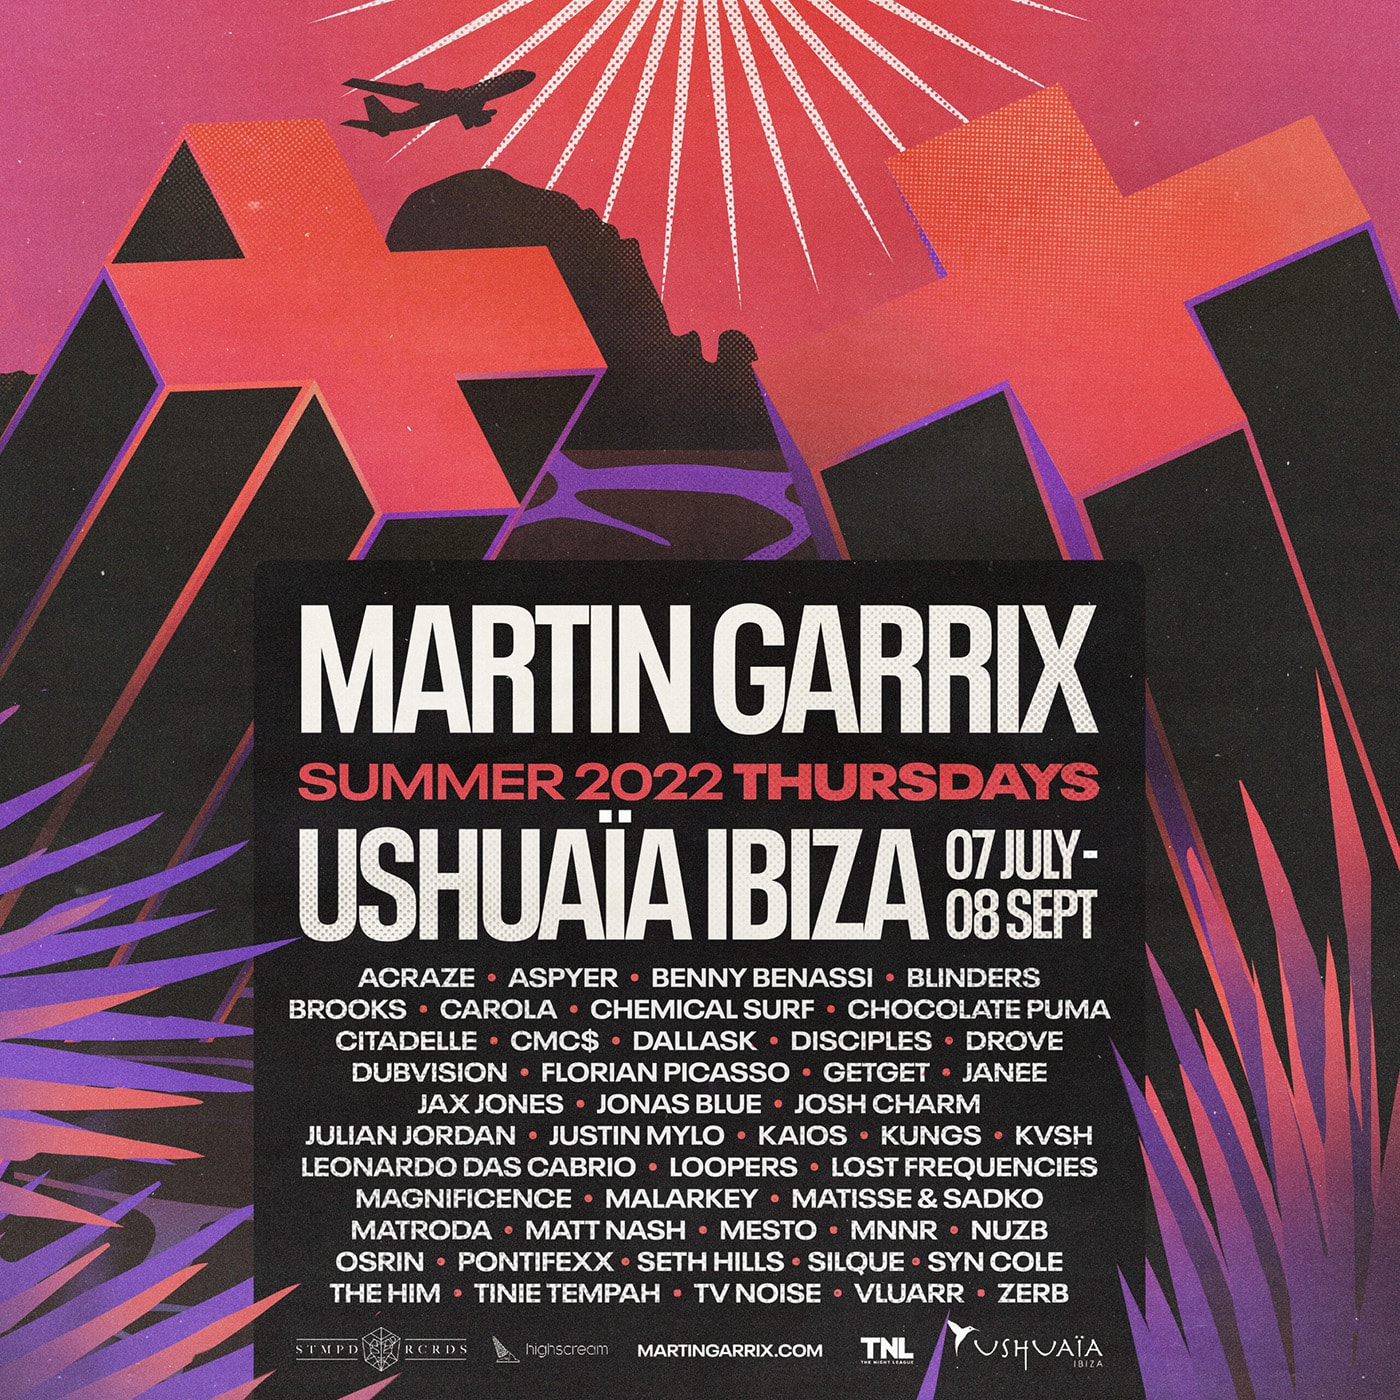 Ushuaïa Ibiza anuncia o line up para residência de Martin Garrix recheado de brasileiros!